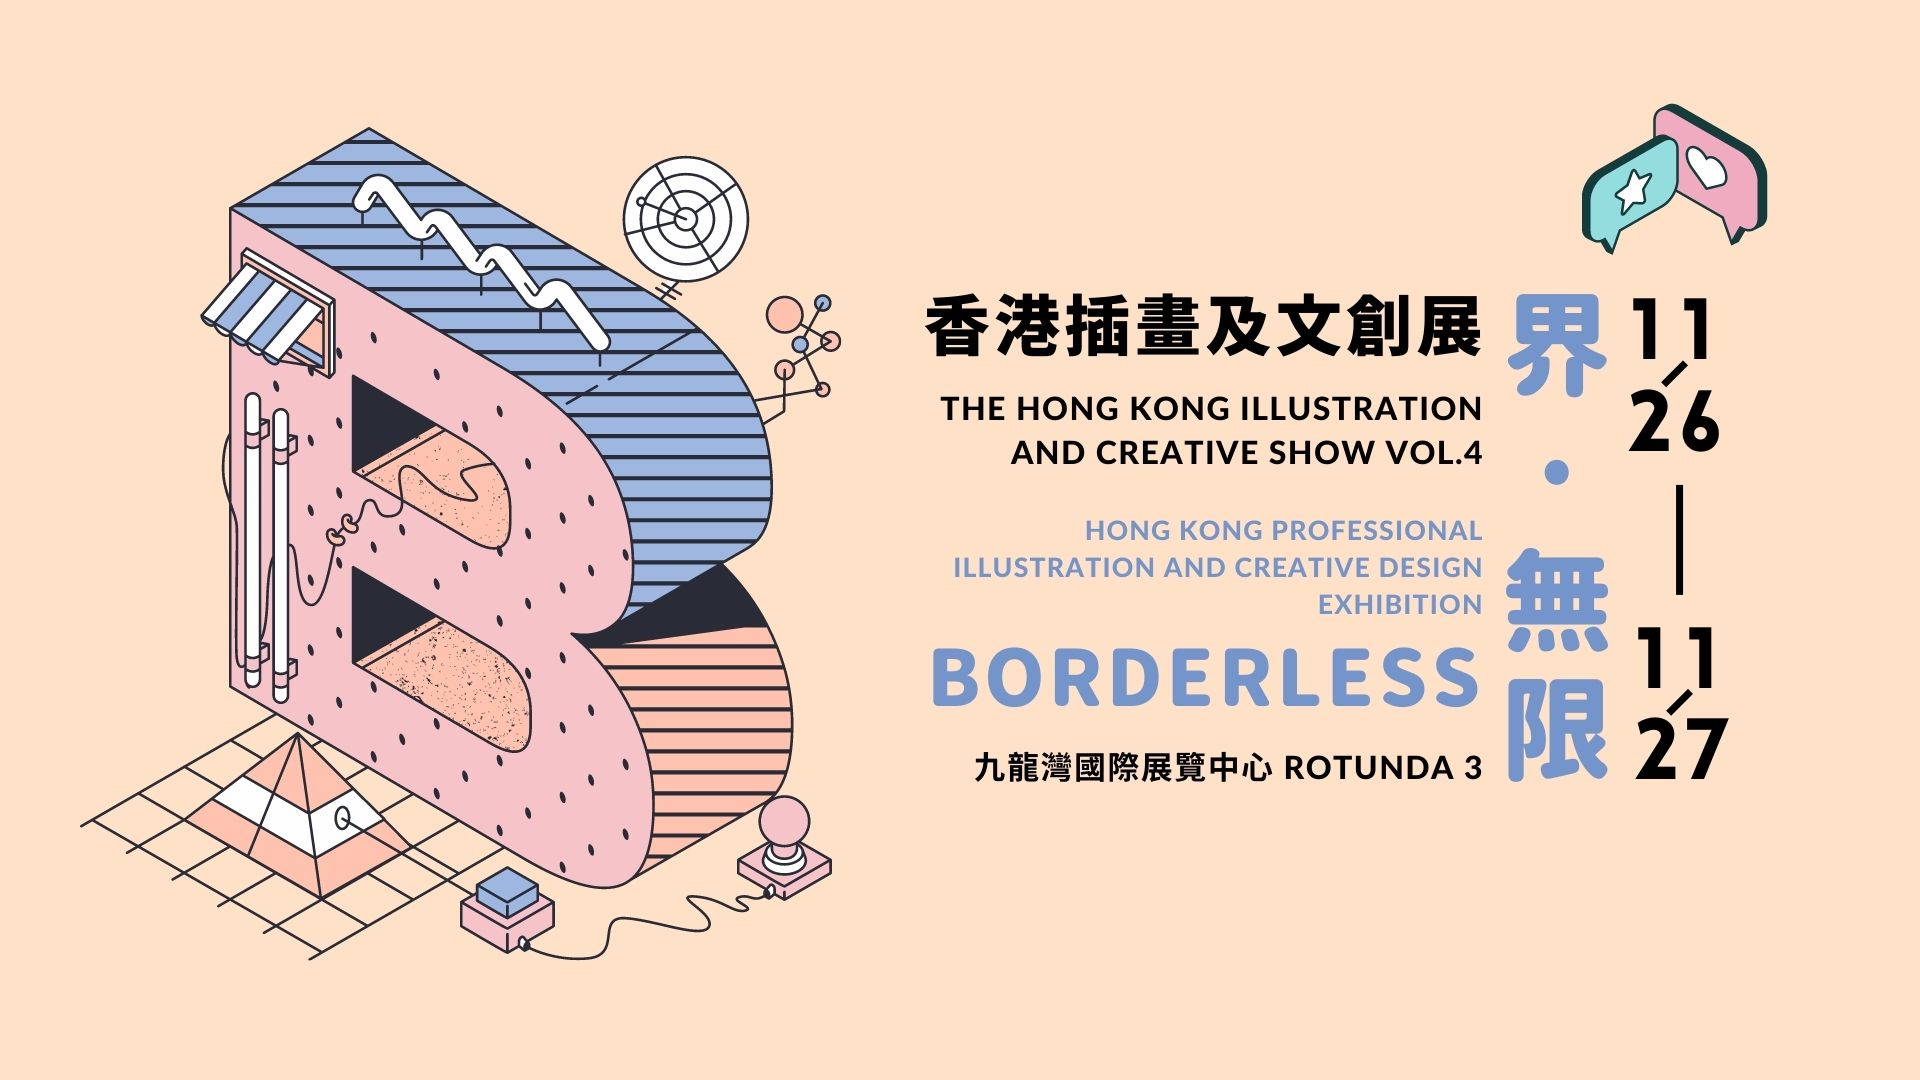 香港插画及文创展 vol.4 (HKICS vol.4) - 每年11月插画文创界盛事